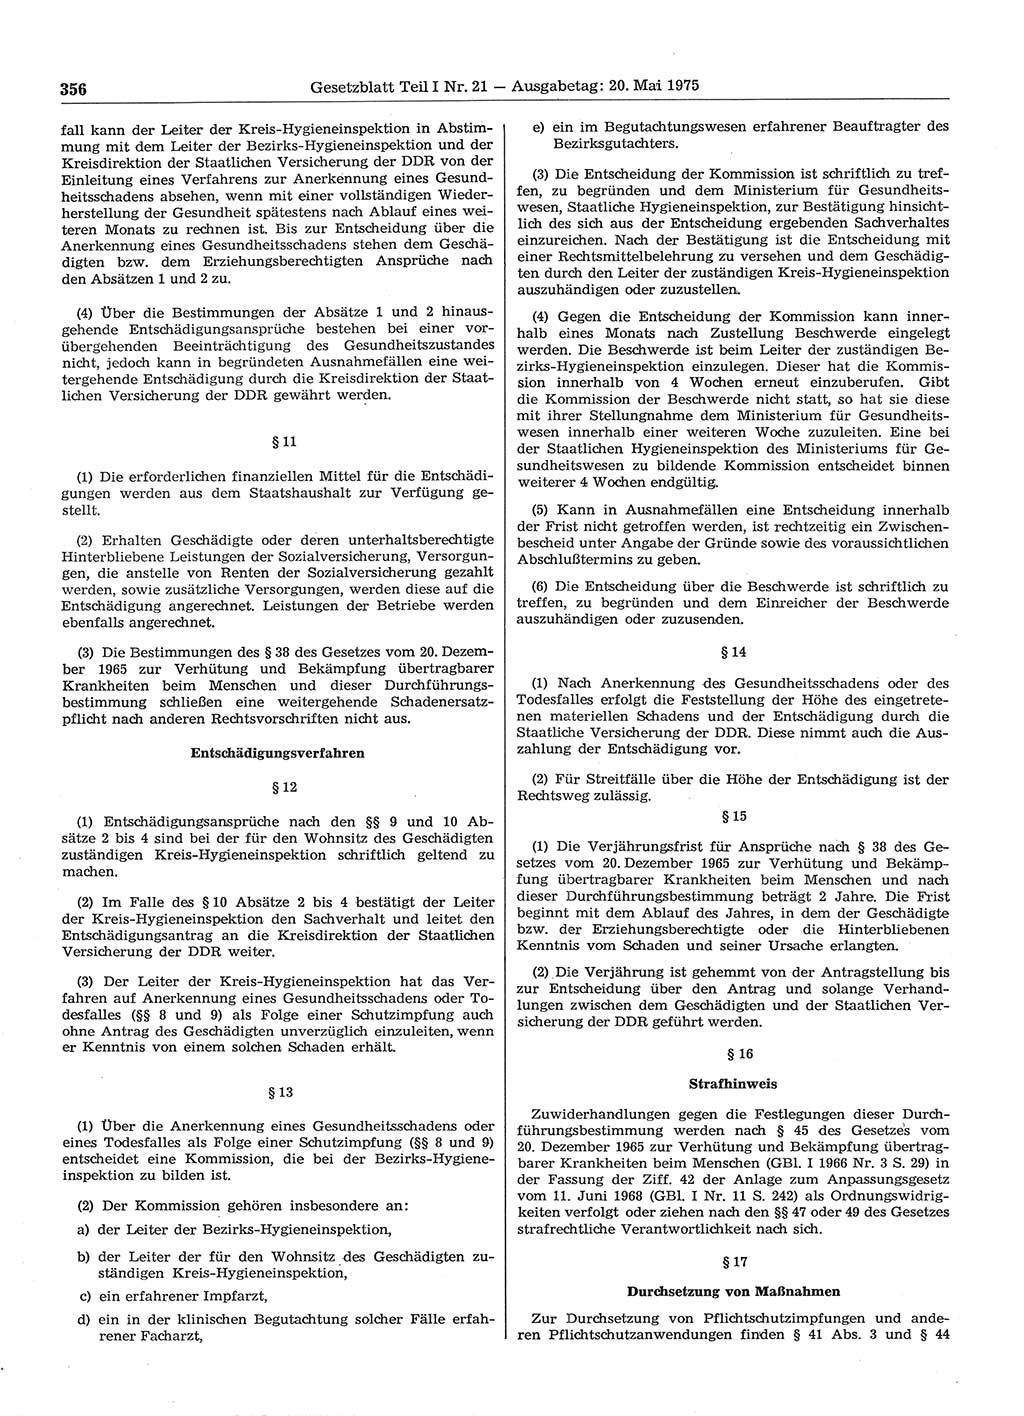 Gesetzblatt (GBl.) der Deutschen Demokratischen Republik (DDR) Teil Ⅰ 1975, Seite 356 (GBl. DDR Ⅰ 1975, S. 356)